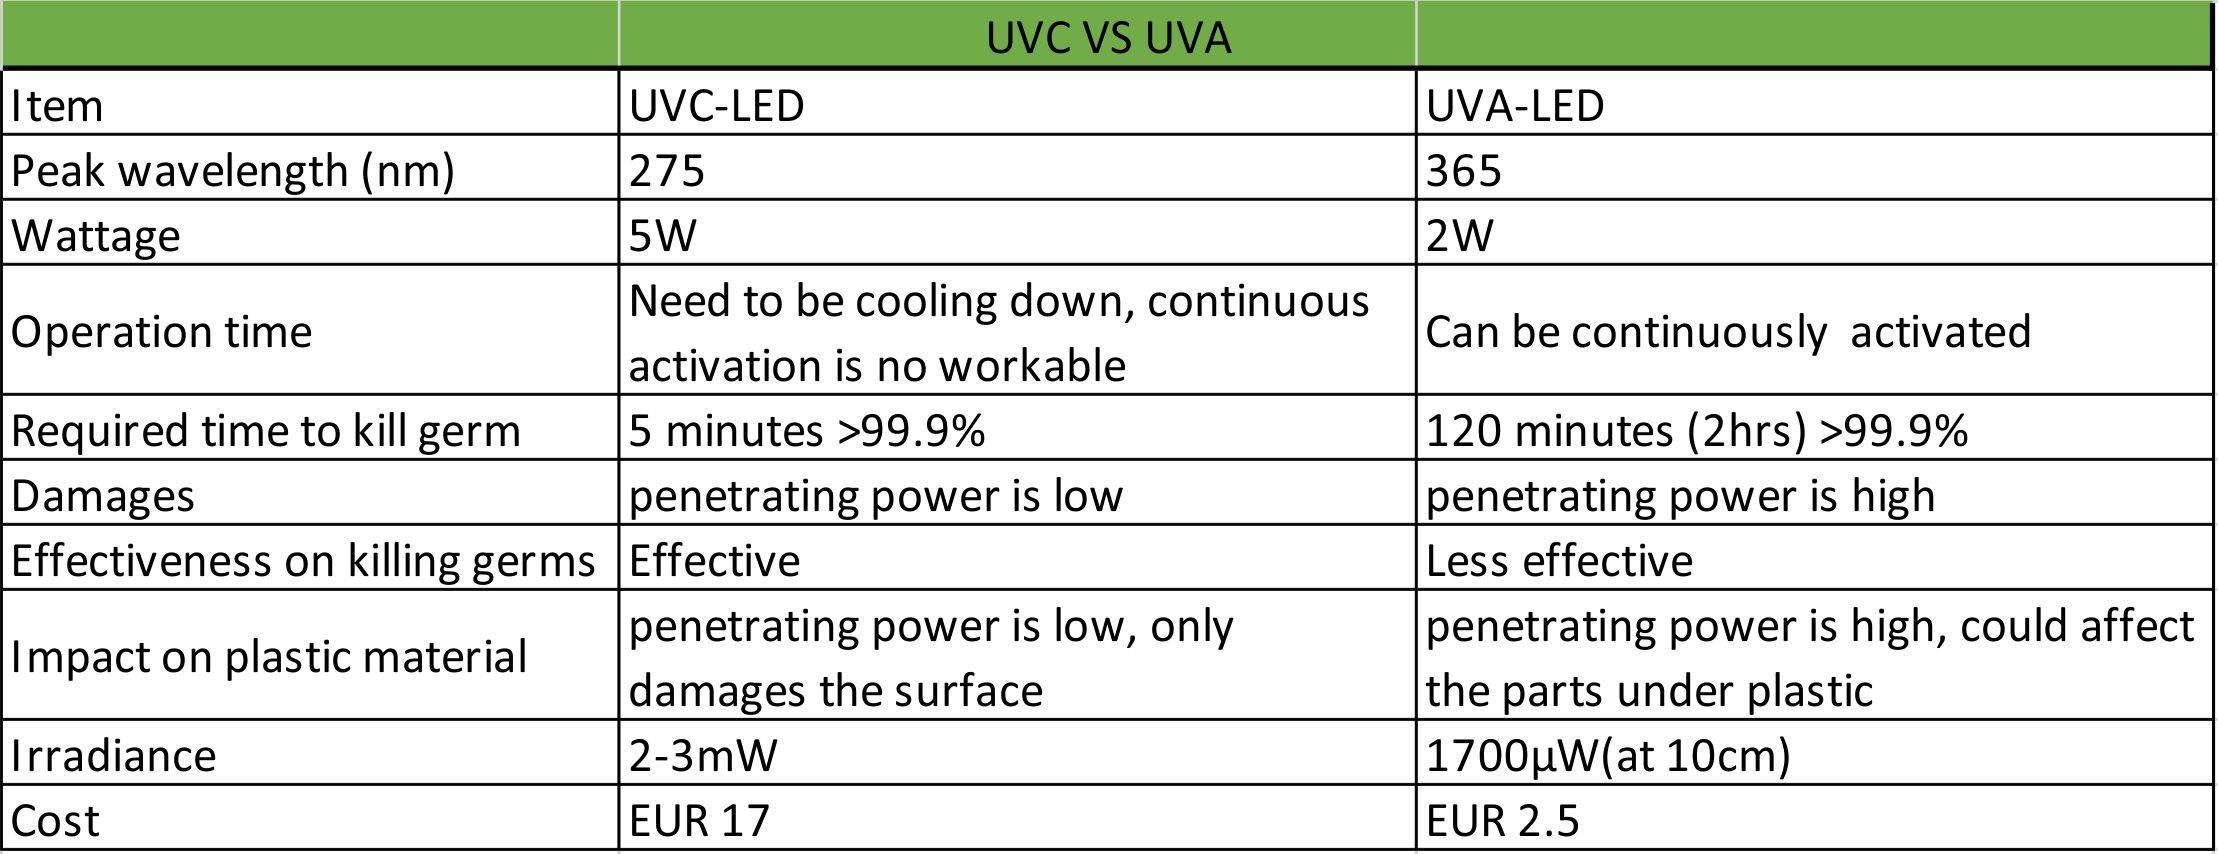 UVC ve UVA LED ışıklarının karşılaştırılması